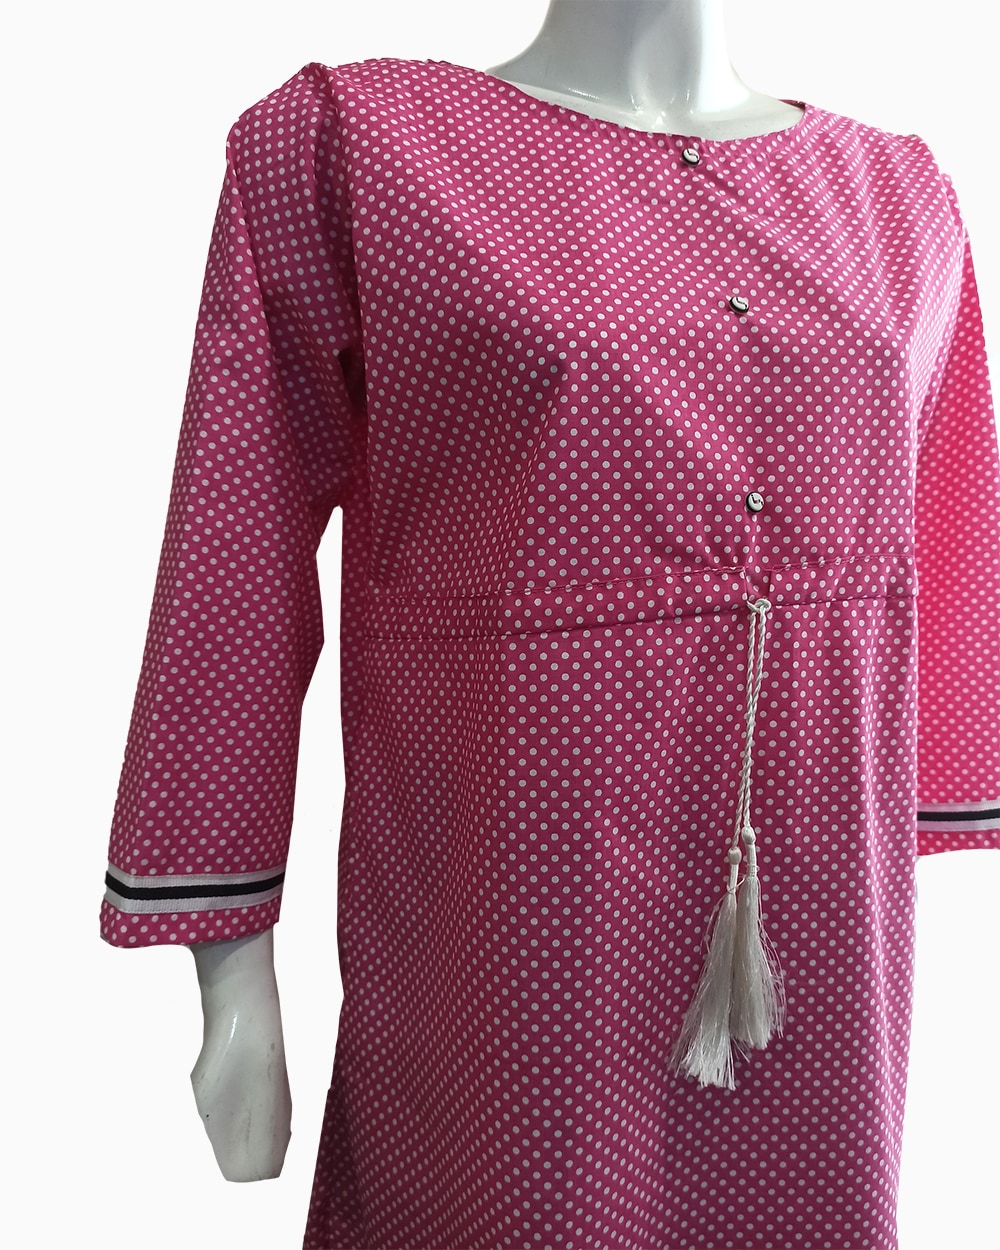 designer pink polkadot shirt - 4